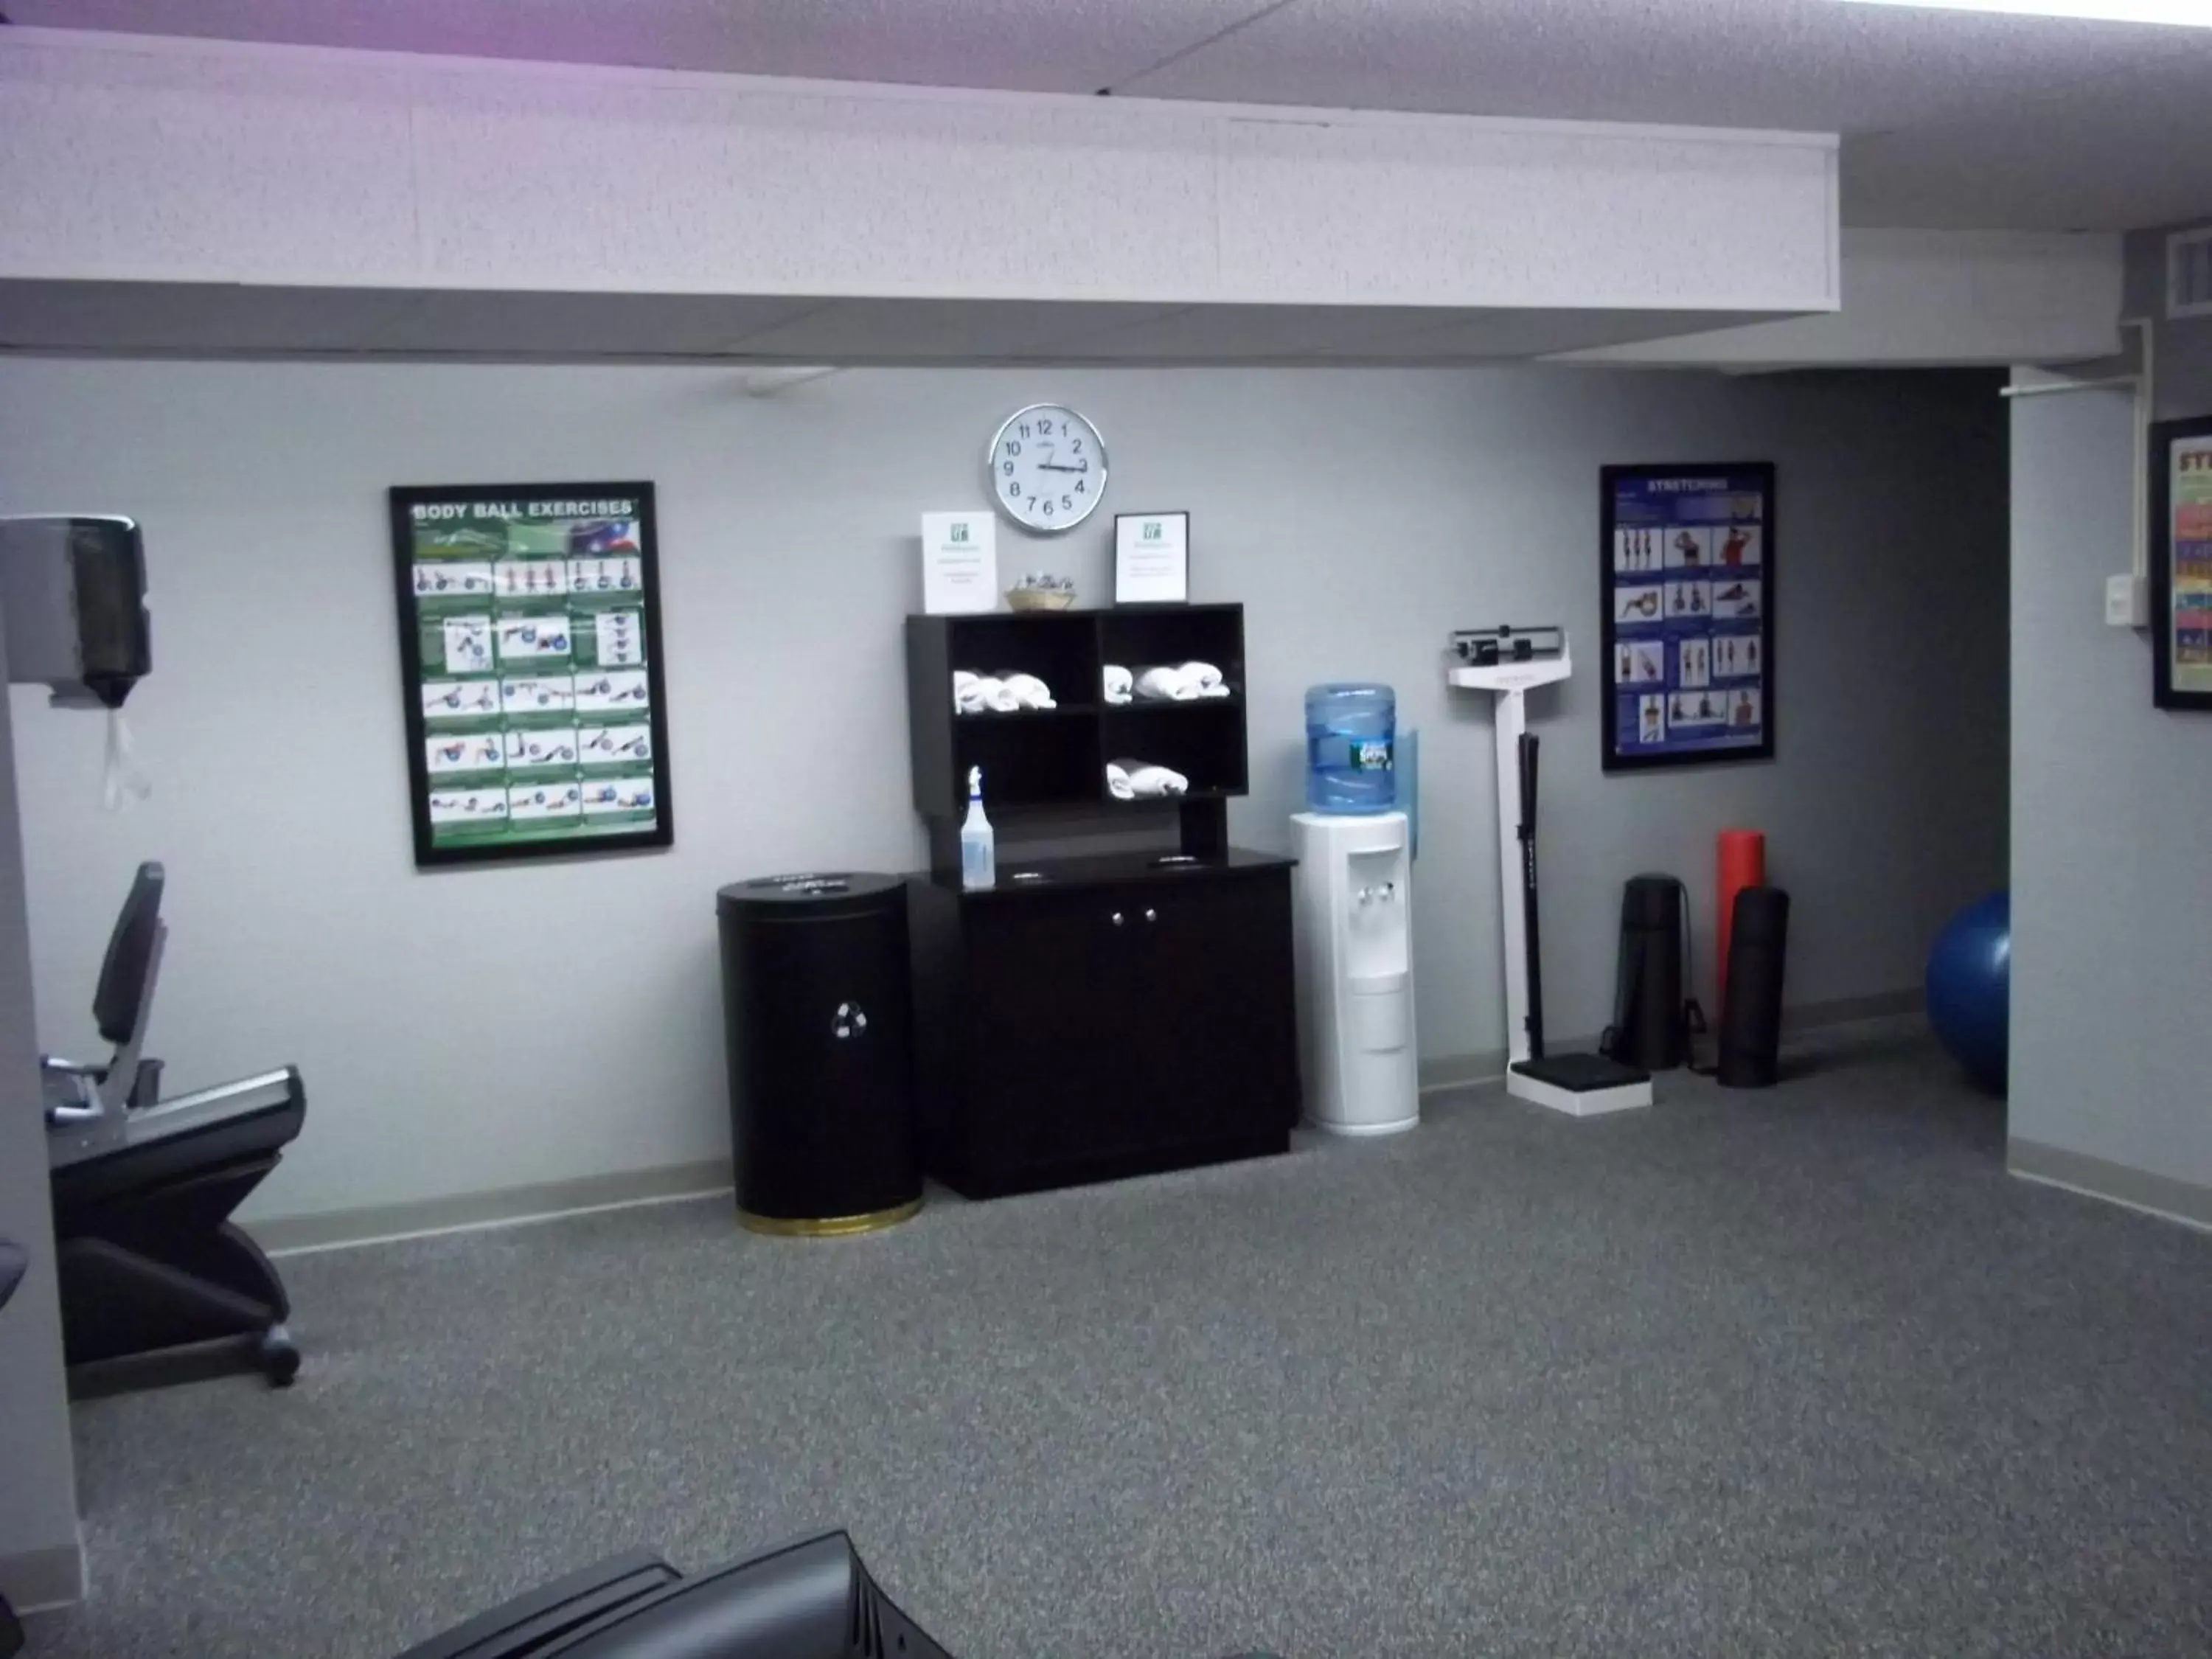 Fitness centre/facilities in enVision Hotel & Conference Center Mansfield-Foxboro